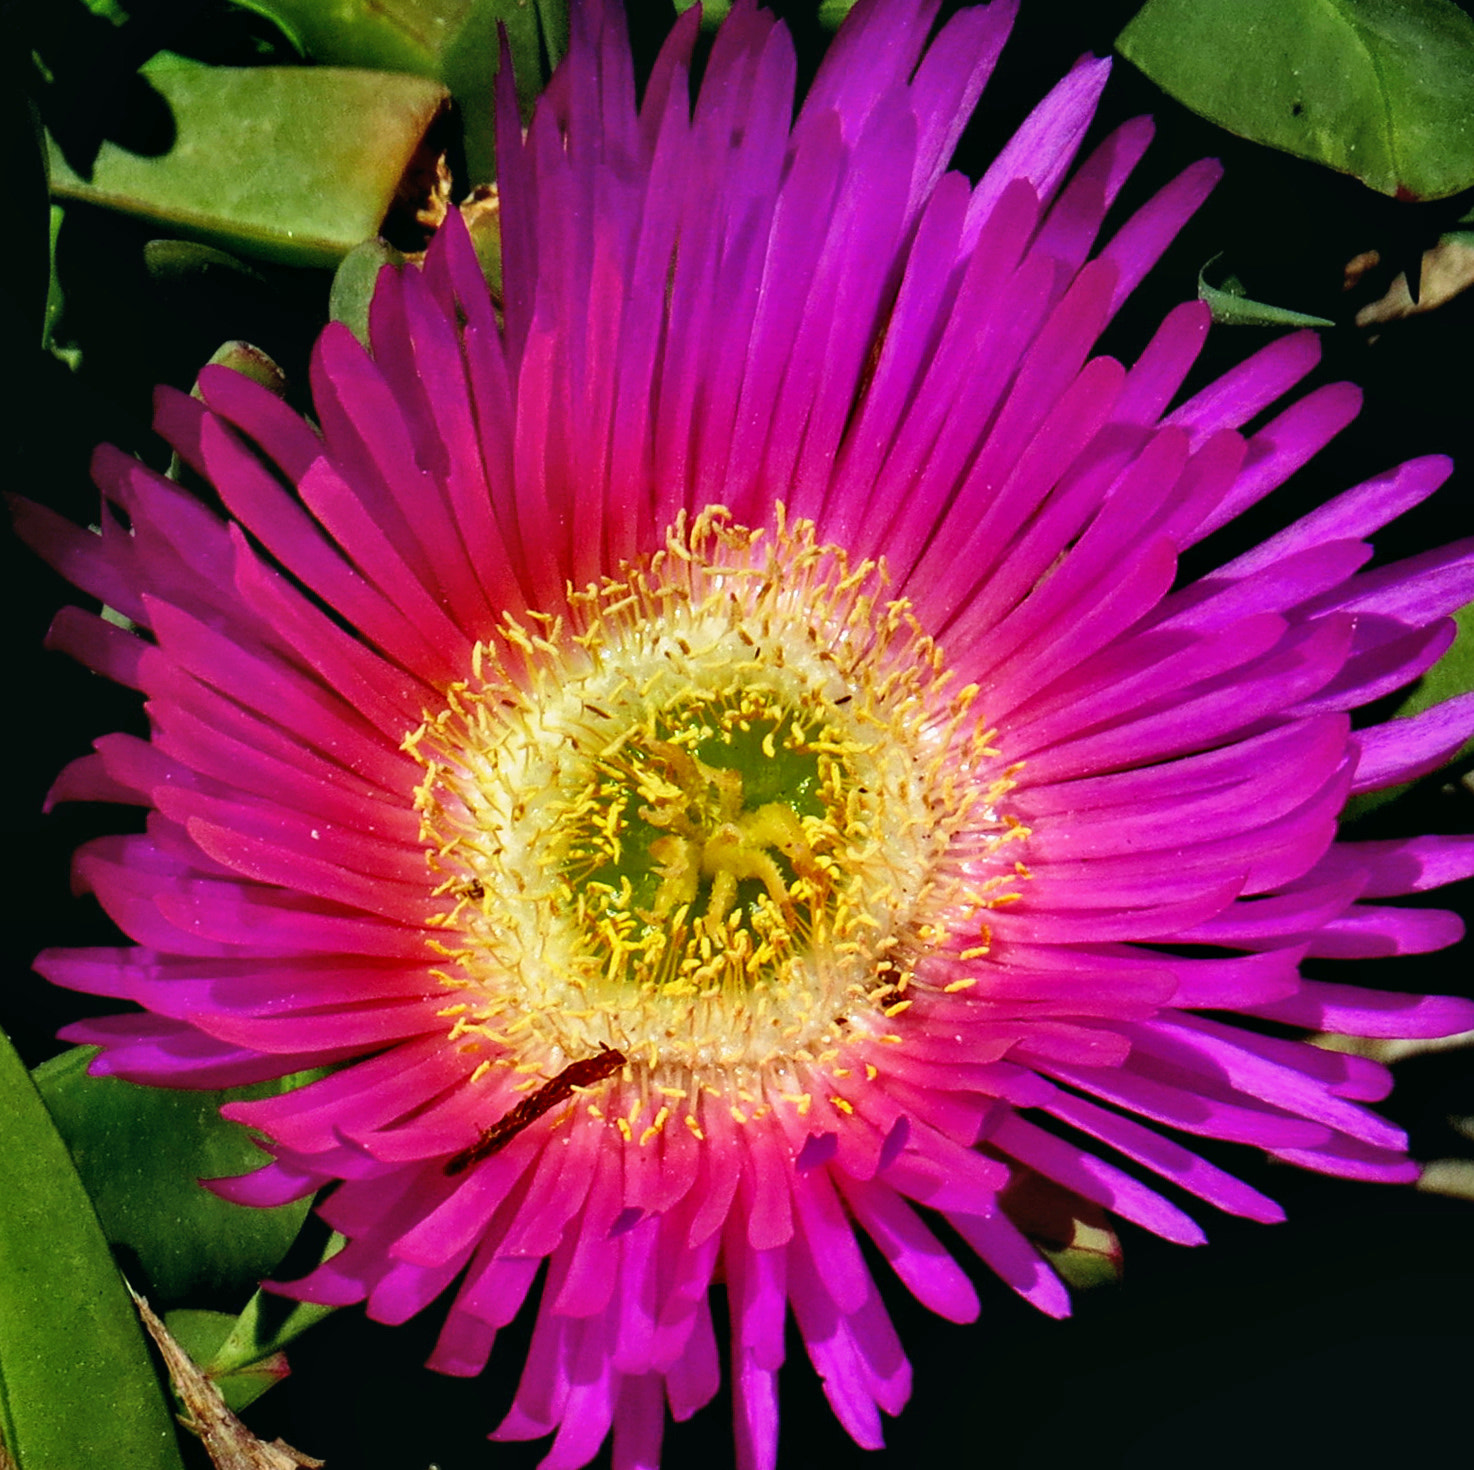 Canon PowerShot SX50 HS sample photo. A purple dandelion flower photography